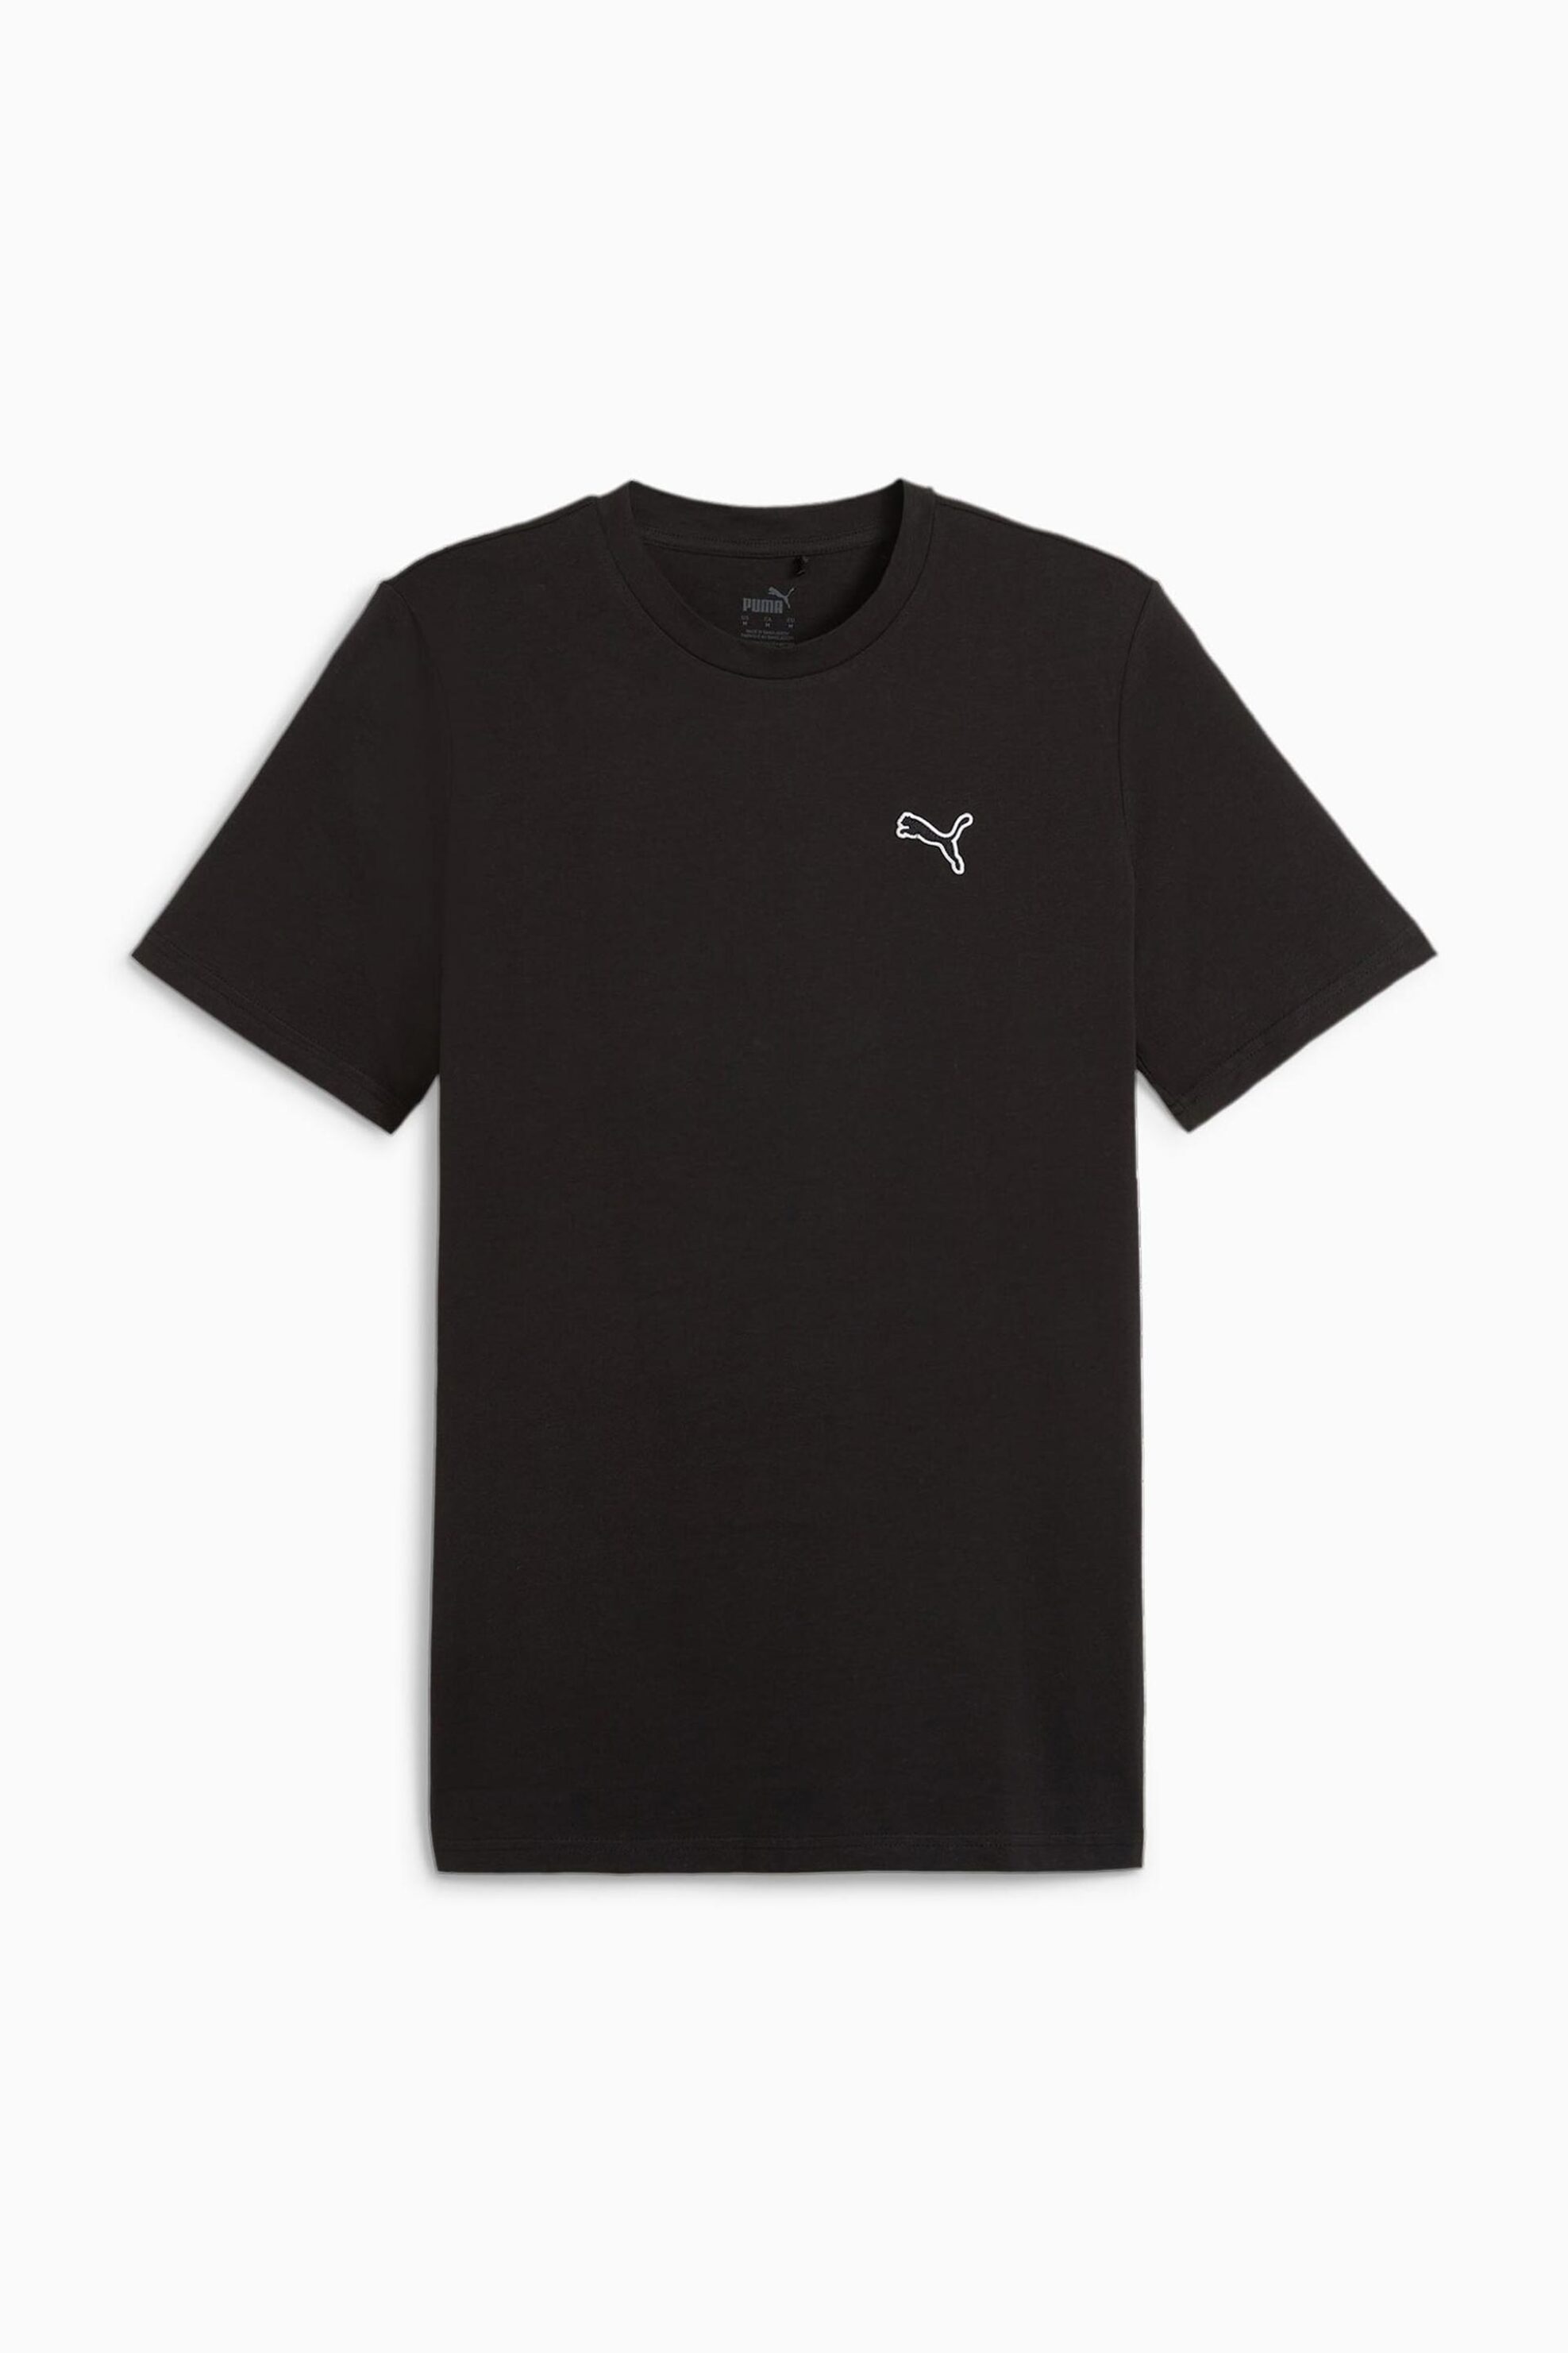 Ανδρική Μόδα > Ανδρικά Αθλητικά > Ανδρικά Αθλητικά Ρούχα > Αθλητικές Μπλούζες > Ανδρικά Αθλητικά T-Shirts Puma ανδρικό T-shirt μονόχρωμο με logo print Regular Fit "Better Essential" - 675977 Μαύρο